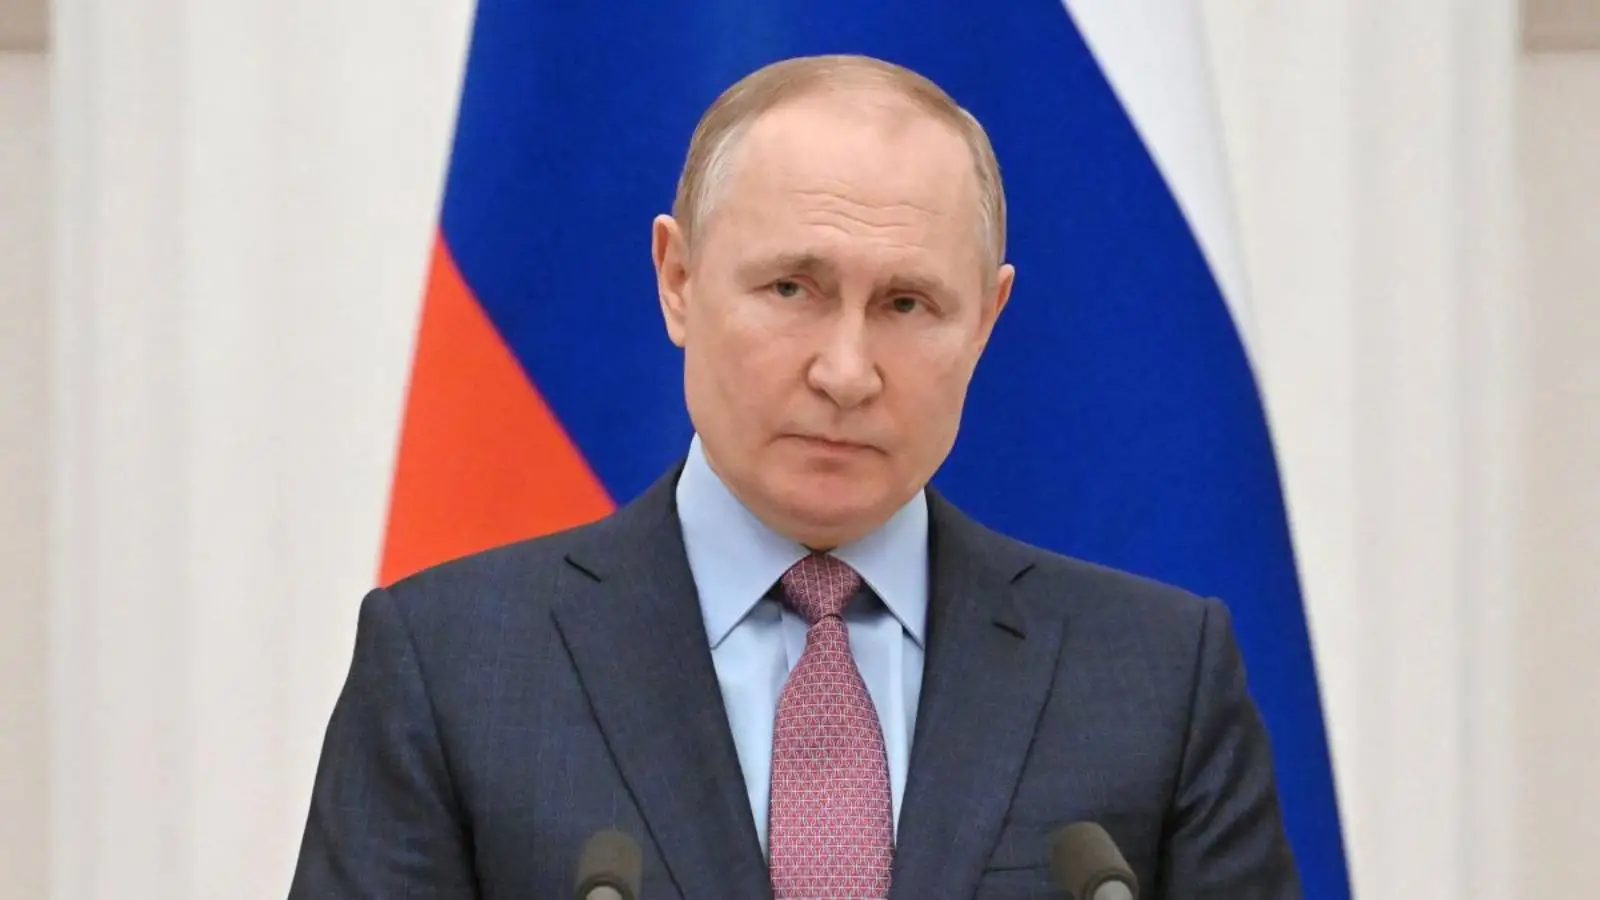 Vladimir Putin Ingrijoreaza Lumea, ar fi Ordonat Testarea de Arme Nucleare la Granitele Ucrainei